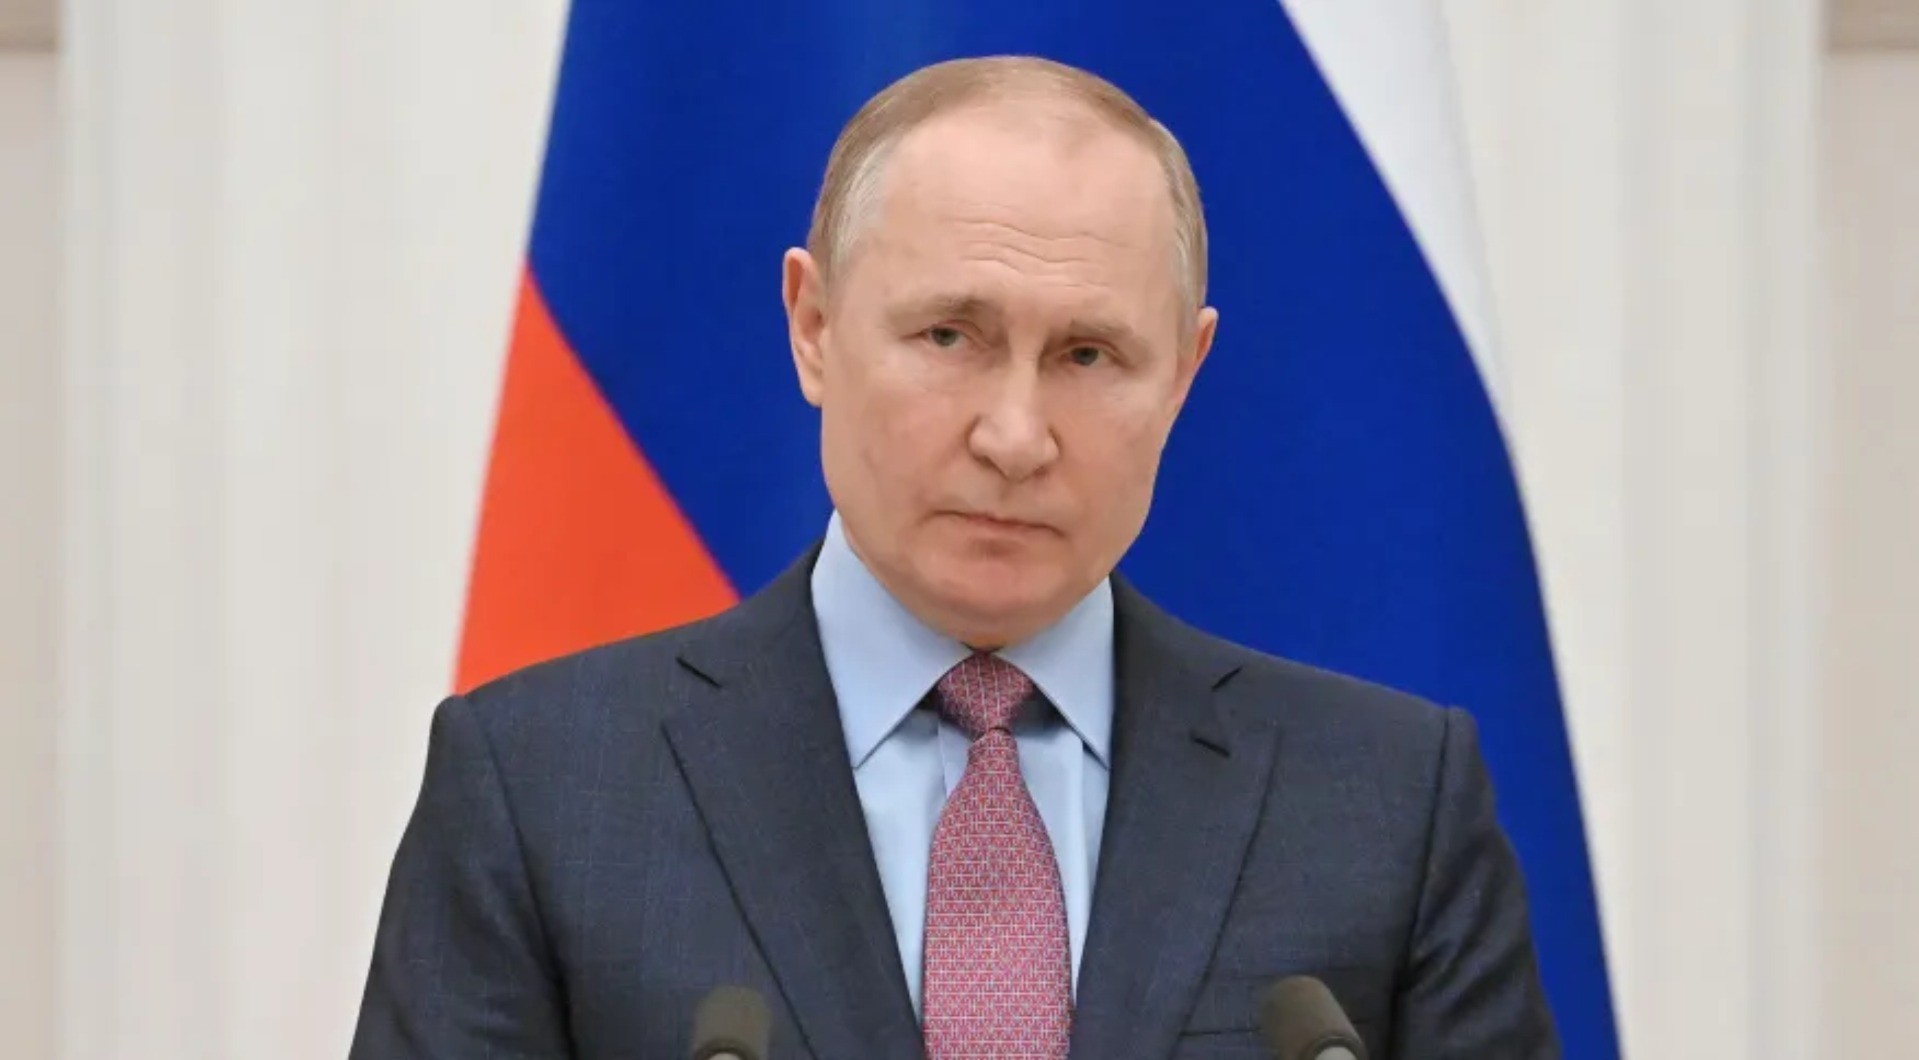 Putin sofre de câncer terminal no intestino, afirma jornal britânico